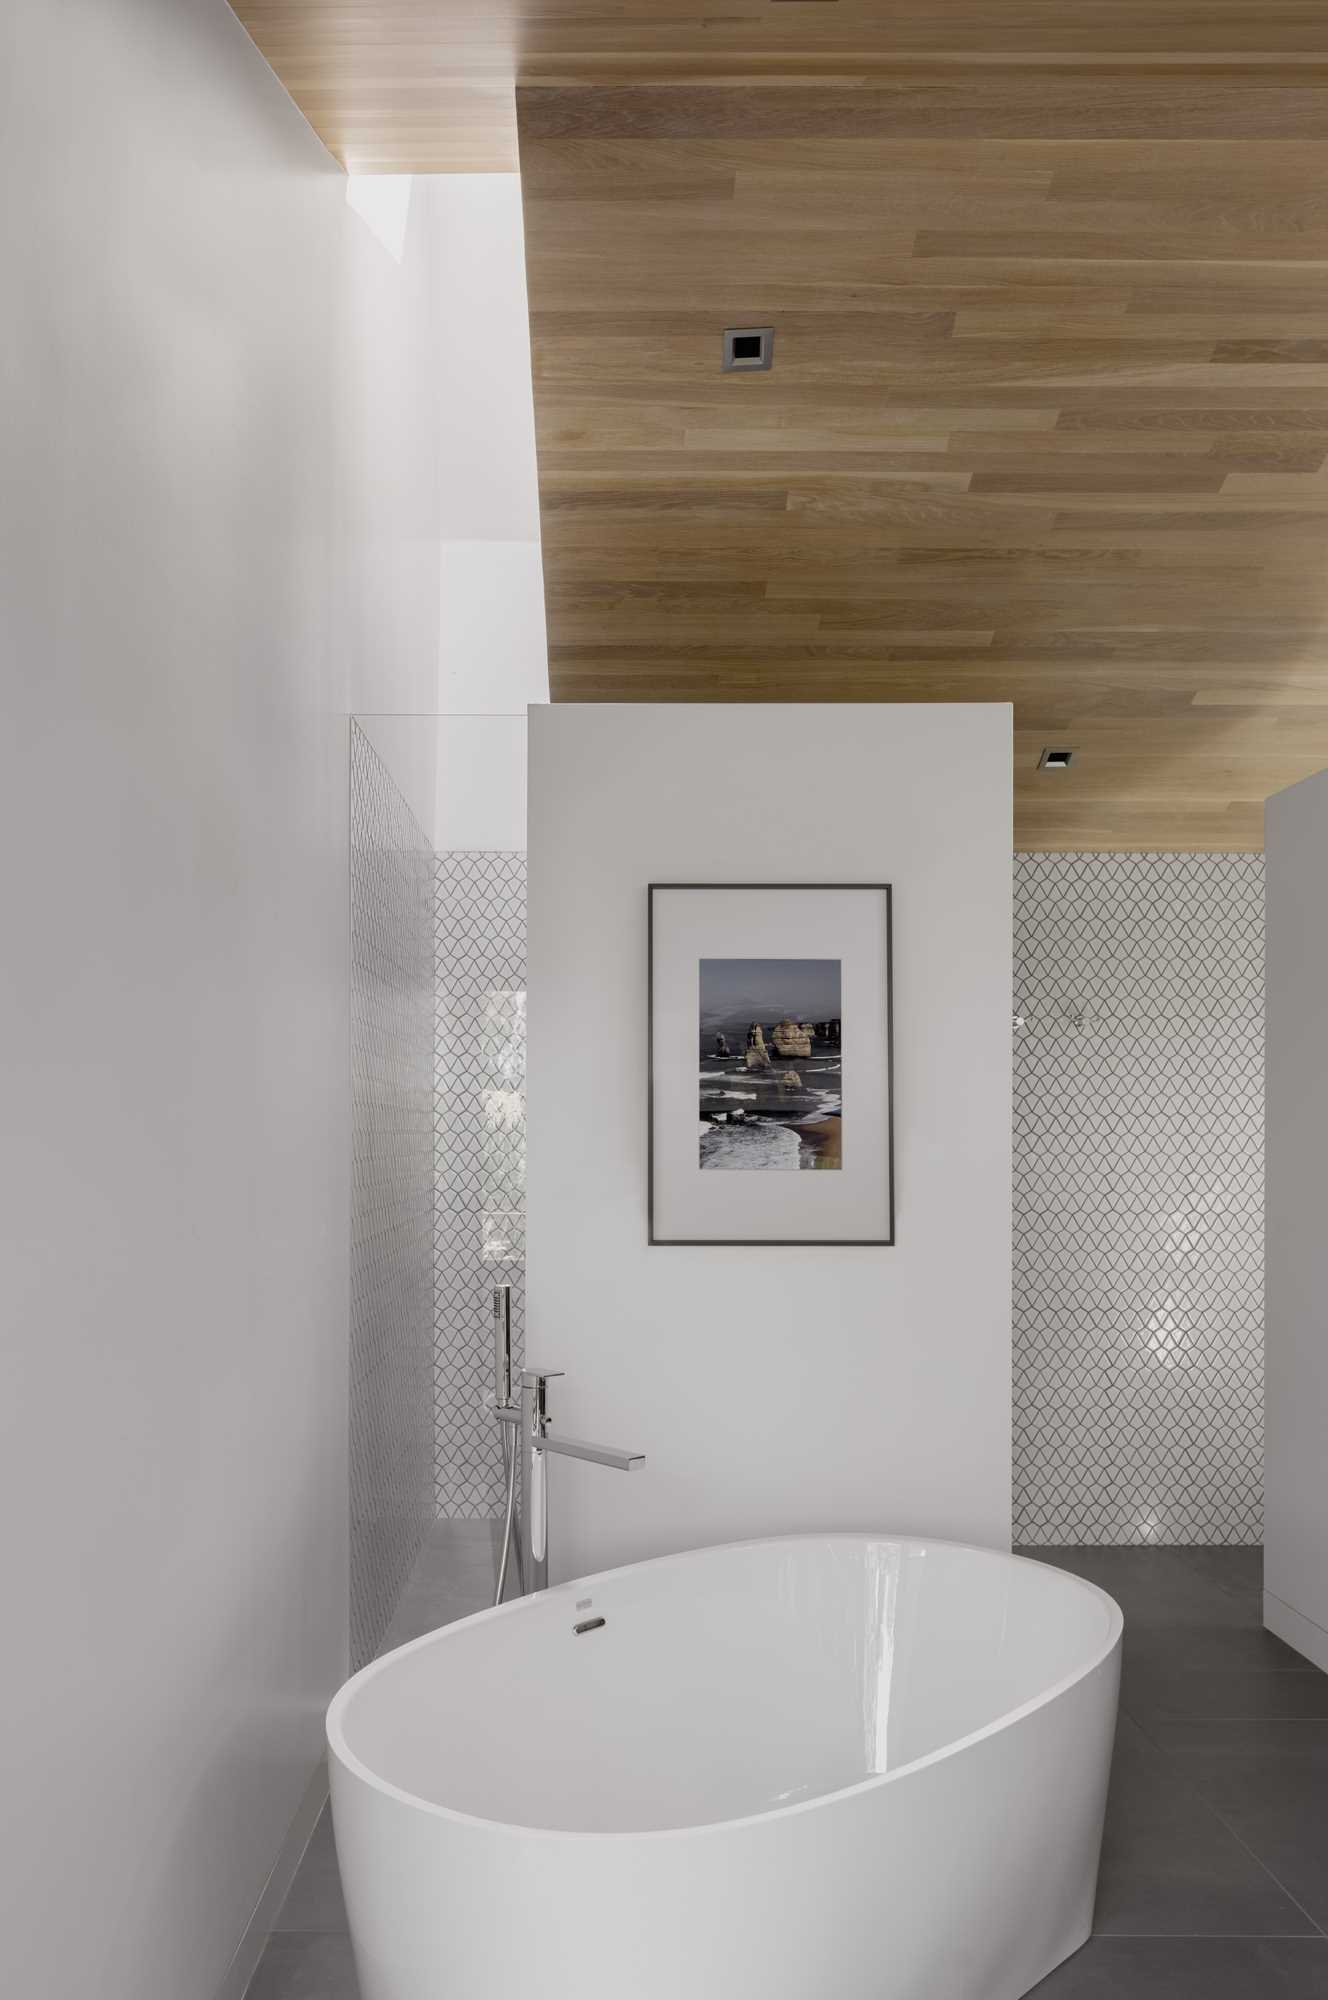 یک حمام بازسازی‌شده دارای وان ایستاده و روشویی رو به ج، برای دو نفر است که با یک جفت دیوار با ارتفاع جزئی از هم جدا شده‌اند که به نور اجازه می‌دهد تا به یک فضای حمام خصوصی که بالای آن یک نورگیر و اتاق توالت است، سرازیر شود.